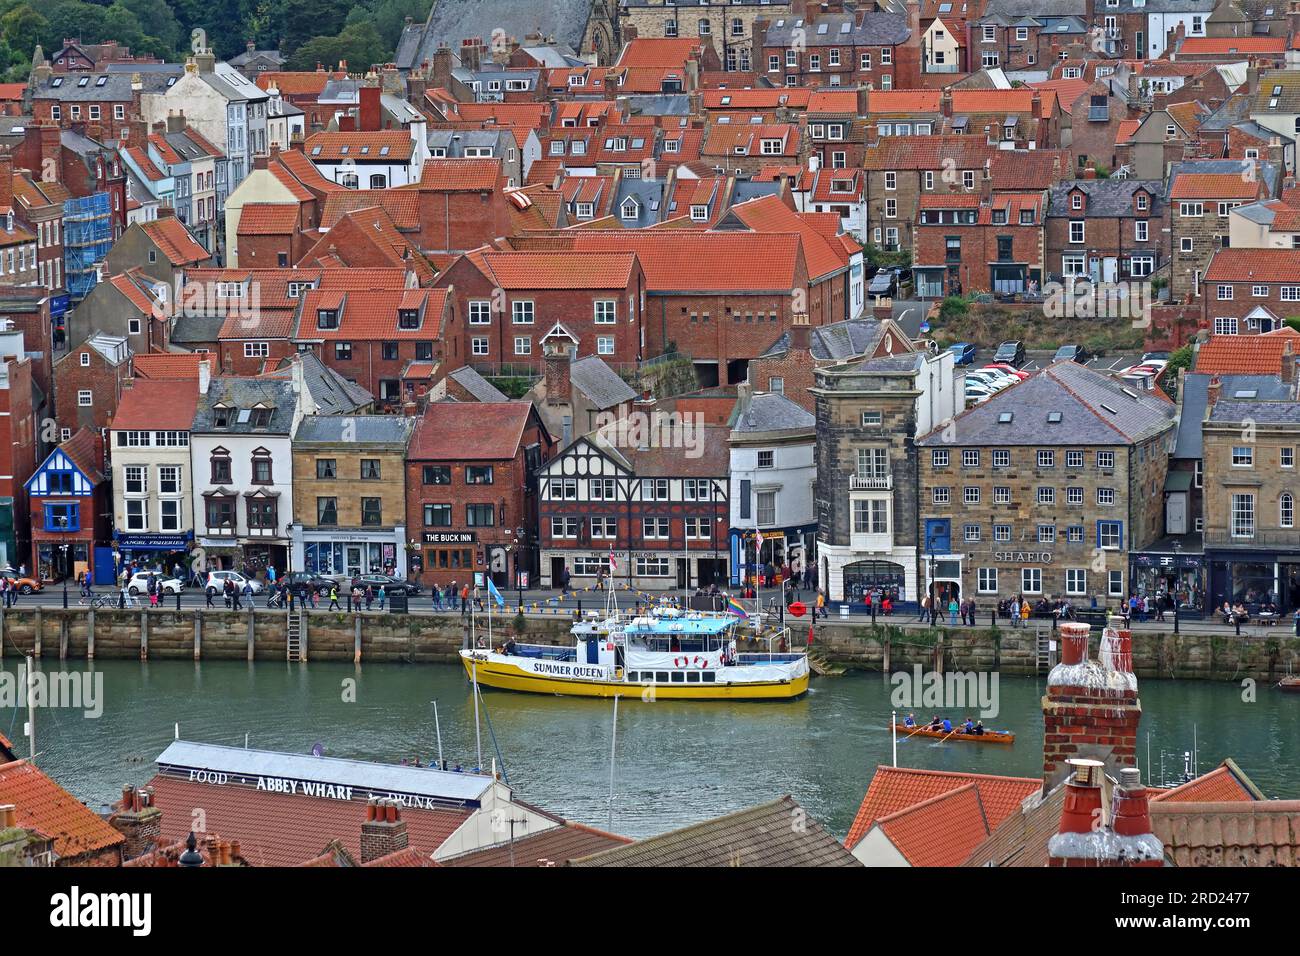 Blick auf West Cliff, Whitby Town, Hafen und Anlegestellen, einschließlich eines gelben Fischerboots, North Yorkshire, England, Großbritannien, YO21 3PU Stockfoto